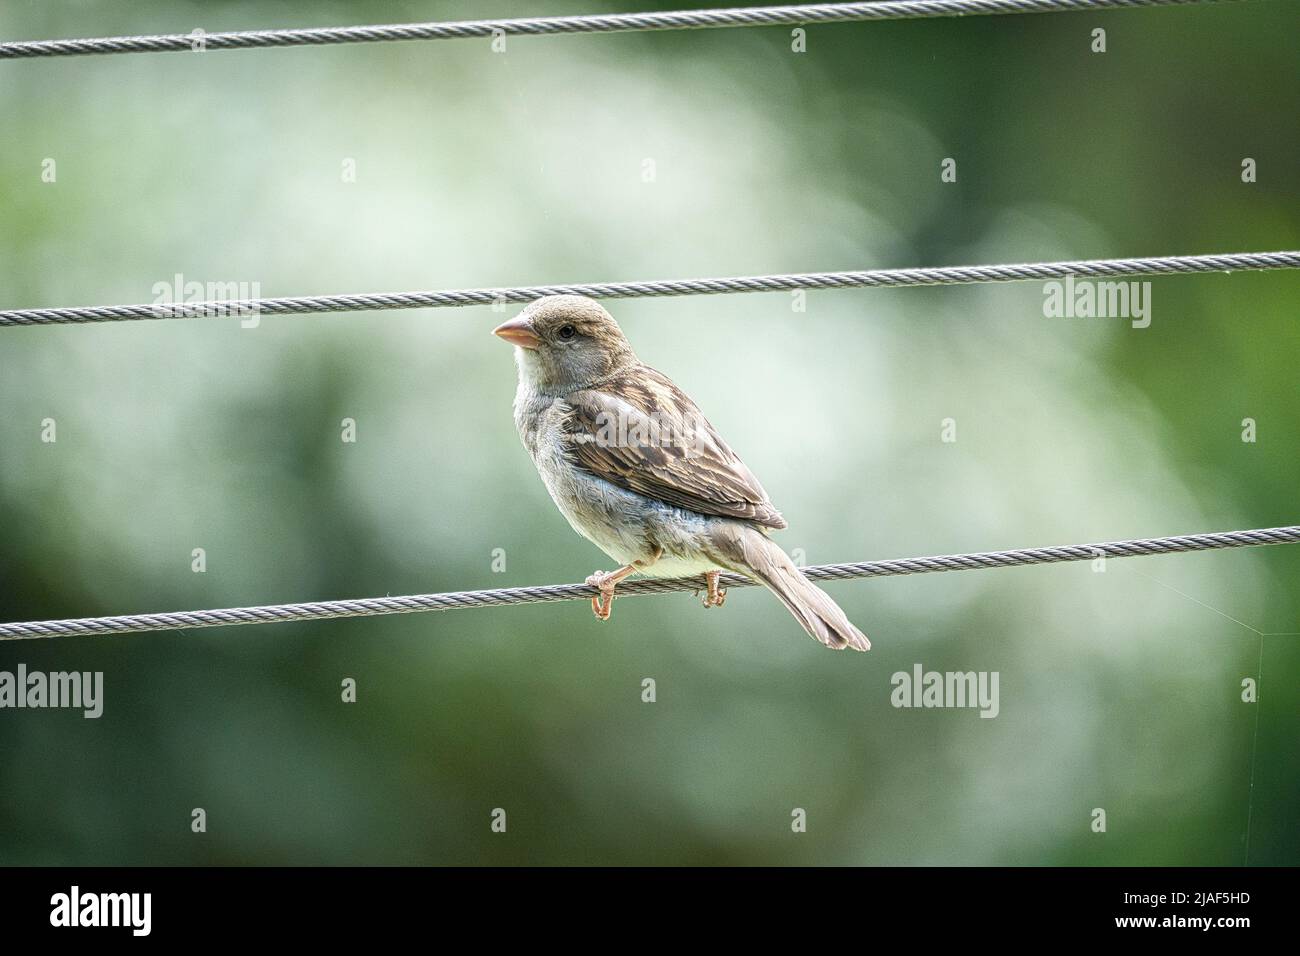 Brauner Sperling auf einem Drahtseil. Kleiner singvögel mit schönem Gefieder. Der Sperling ist ein gefährdeter Vogel. Aufgenommen in Deutschland Stockfoto